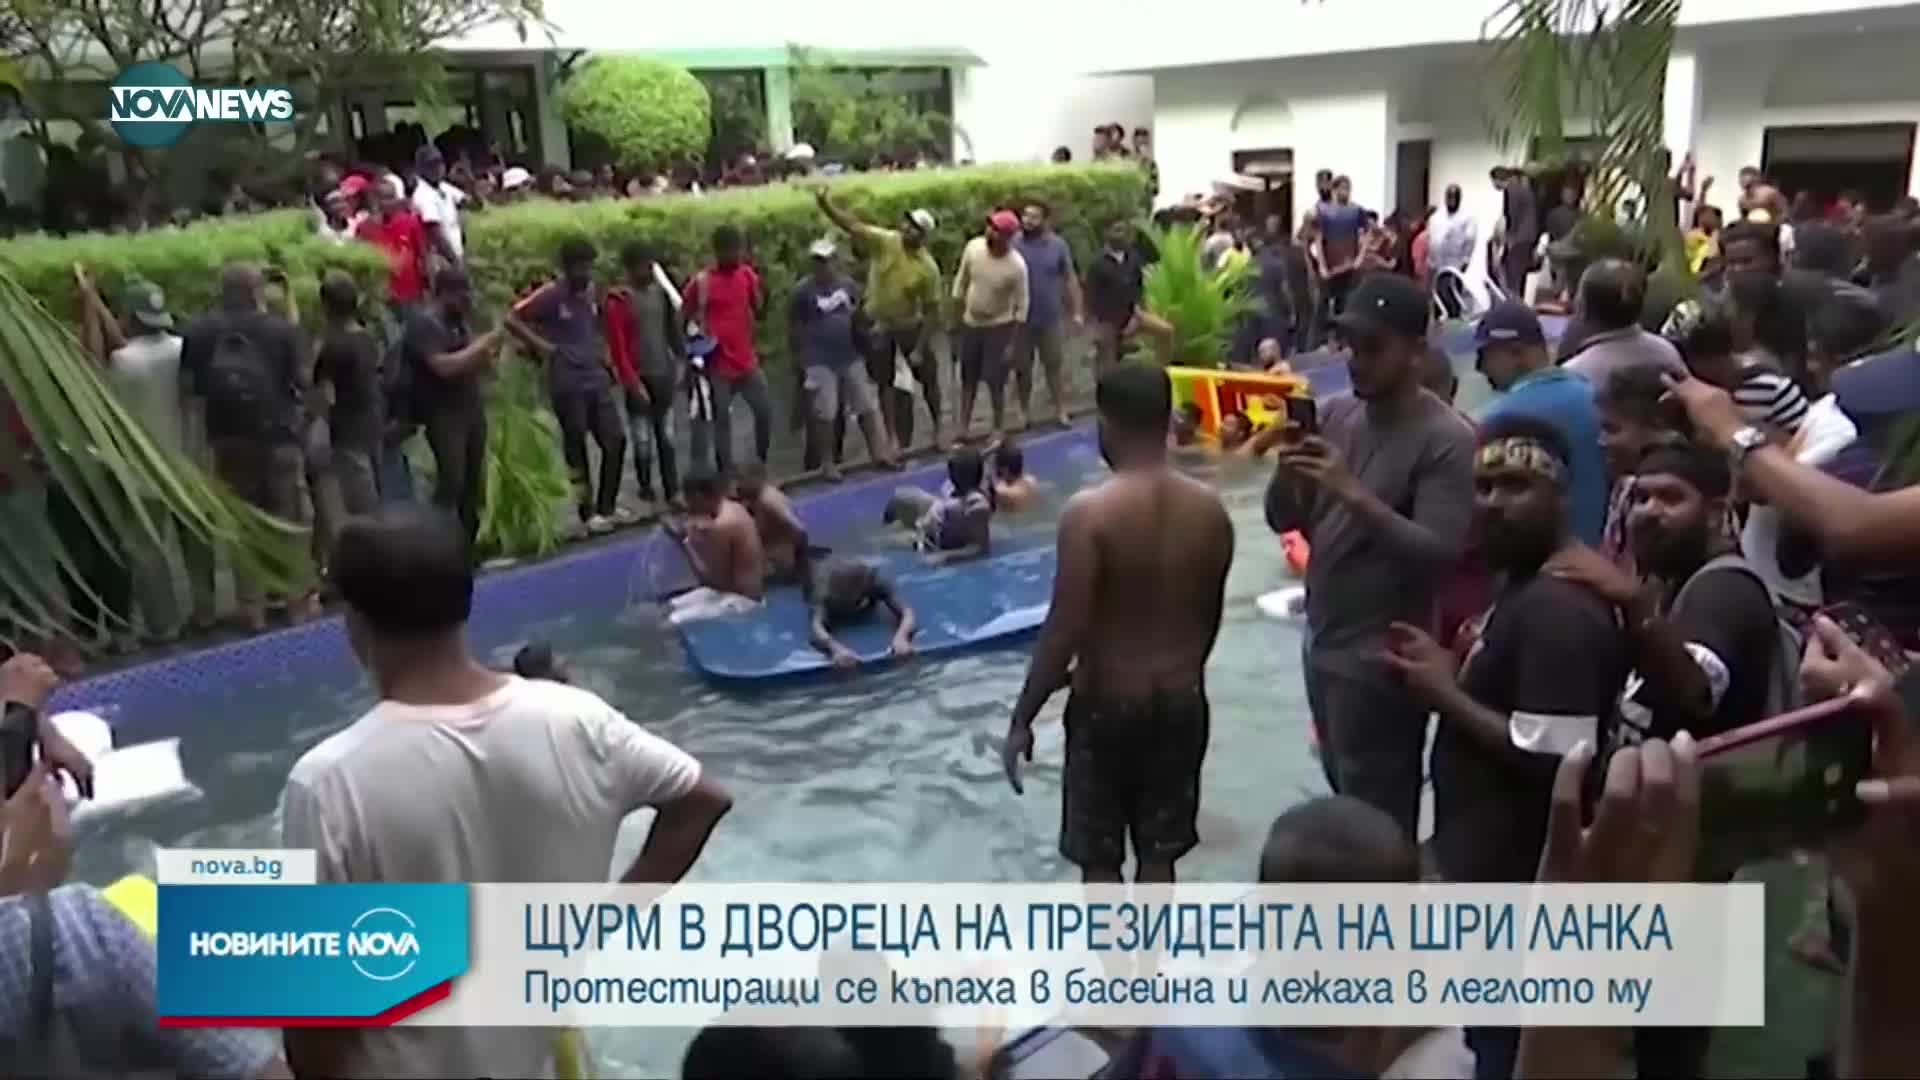 Стотици нахлуха в двореца на президента на Шри Ланка и се къпаха в басейна му